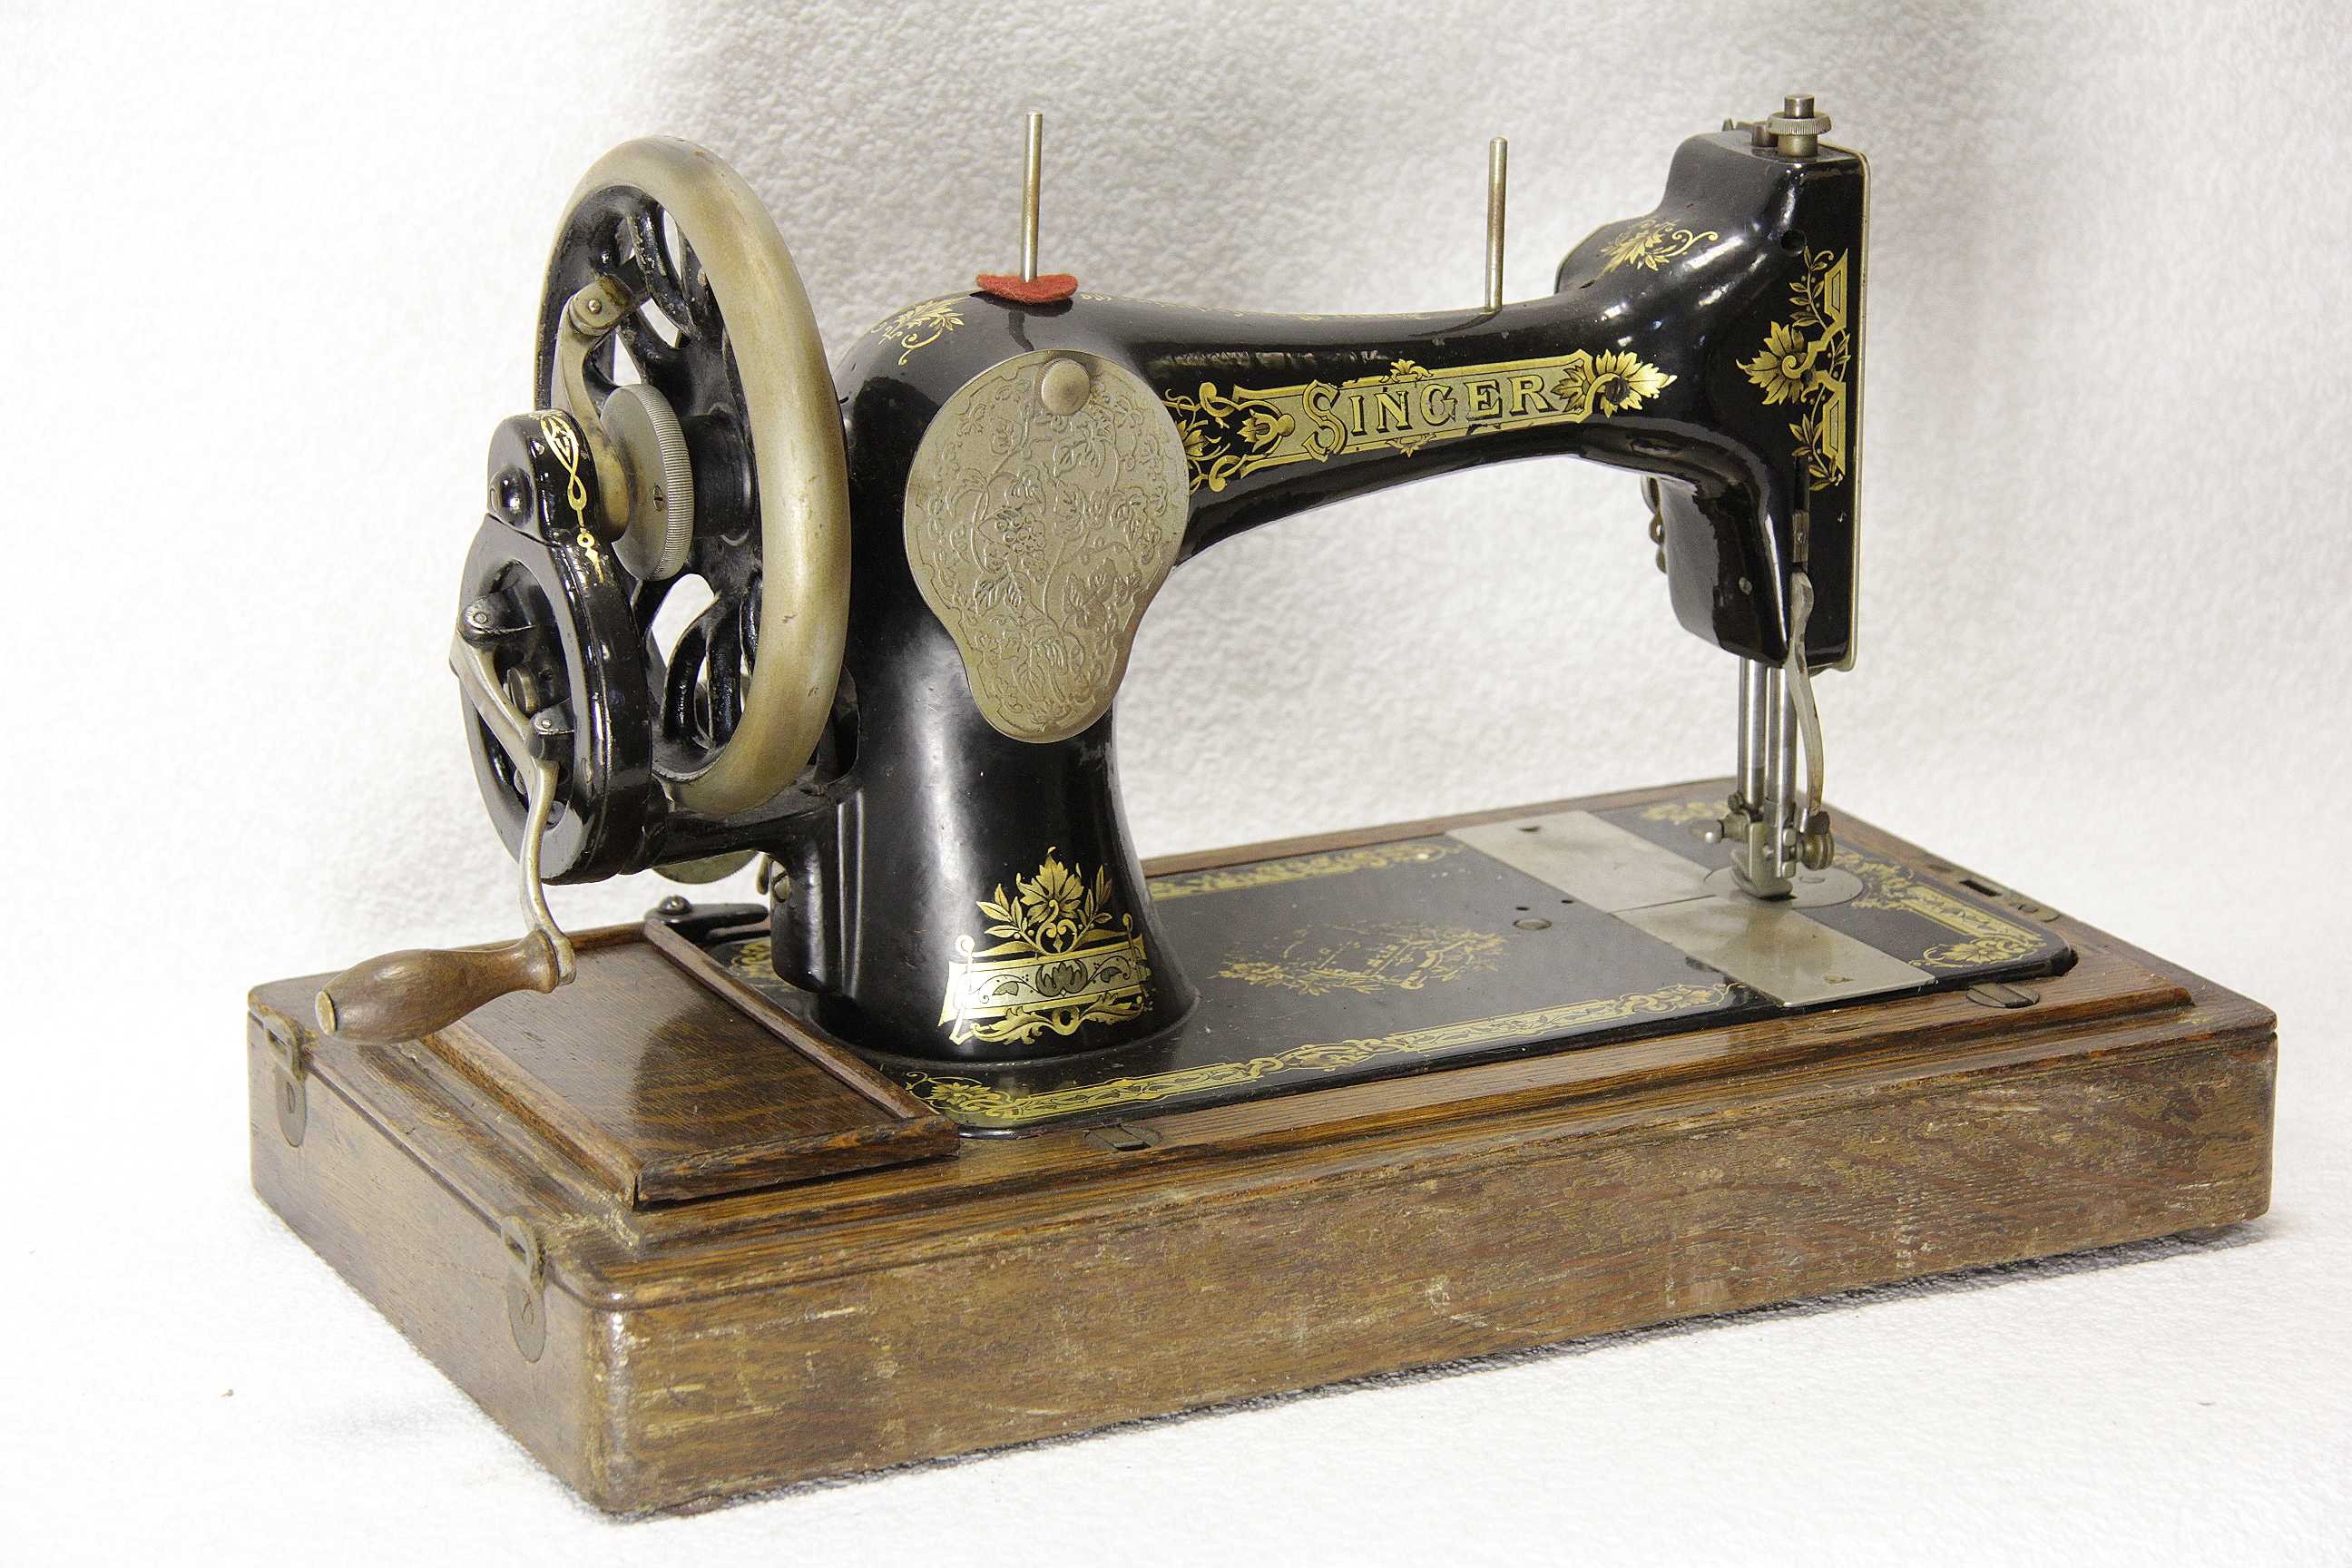 Швейные машинки металлические. Швейная машинка (Zinger super 2001). Швейная машинка Зингер 1851. Швейная машинка Зингер 1906. Швейная машинка Зингера 1841.